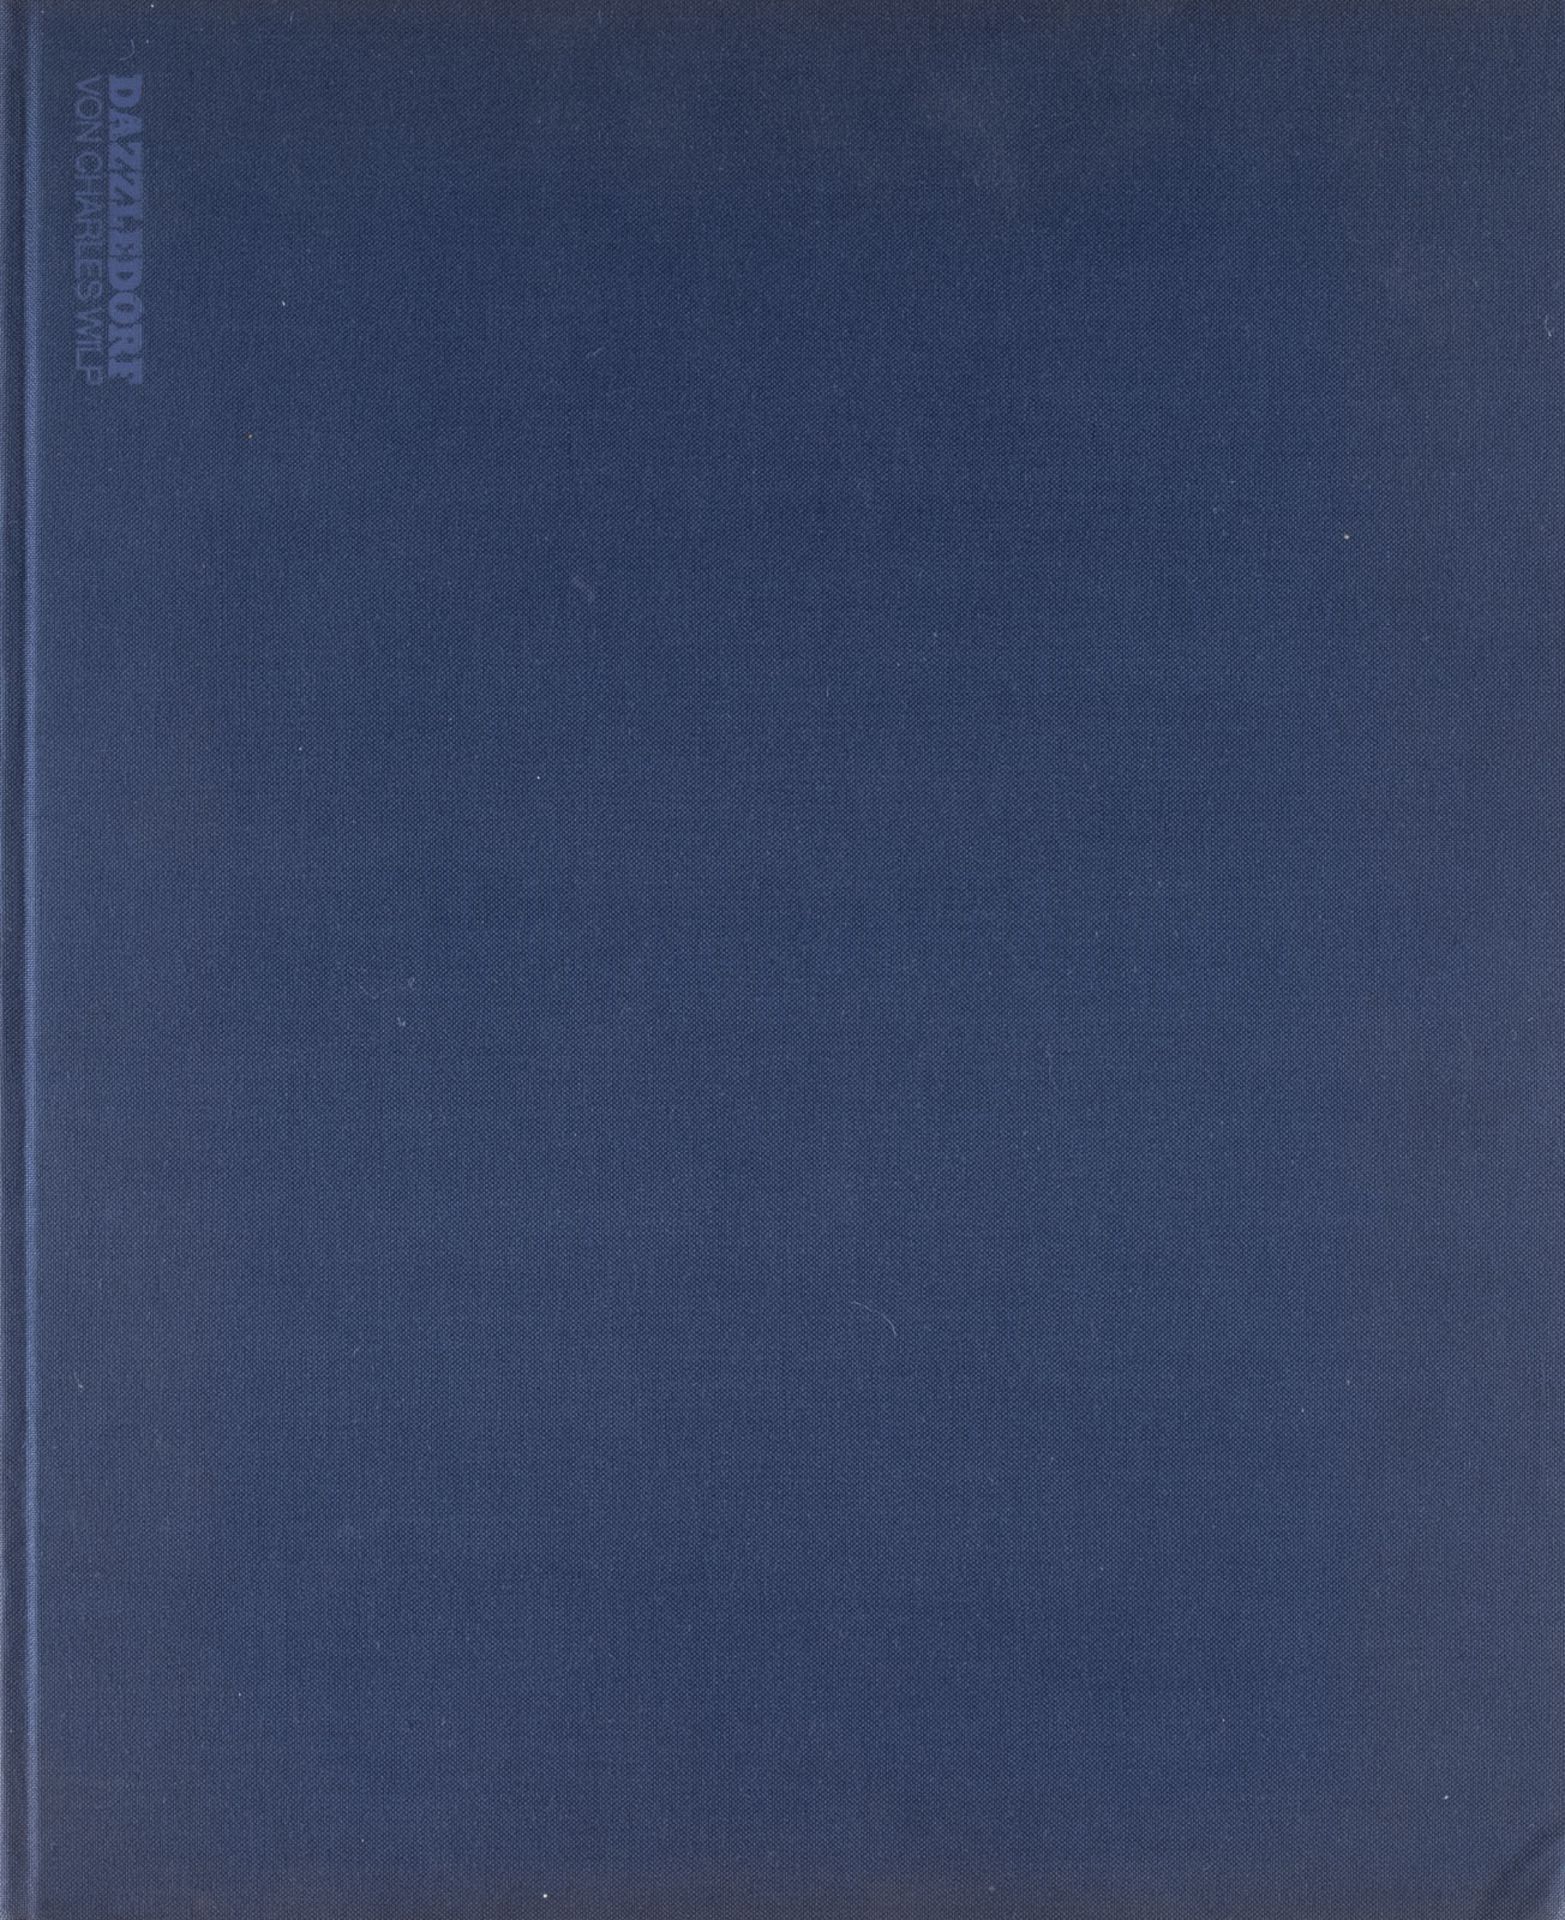 CHARLES WILP BUCH 'DAZZLEDORF - DÜSSELDORF "VORORT DER WELT" ', MIT SIGNATUR VON JOSEPH BEUYS (1979)